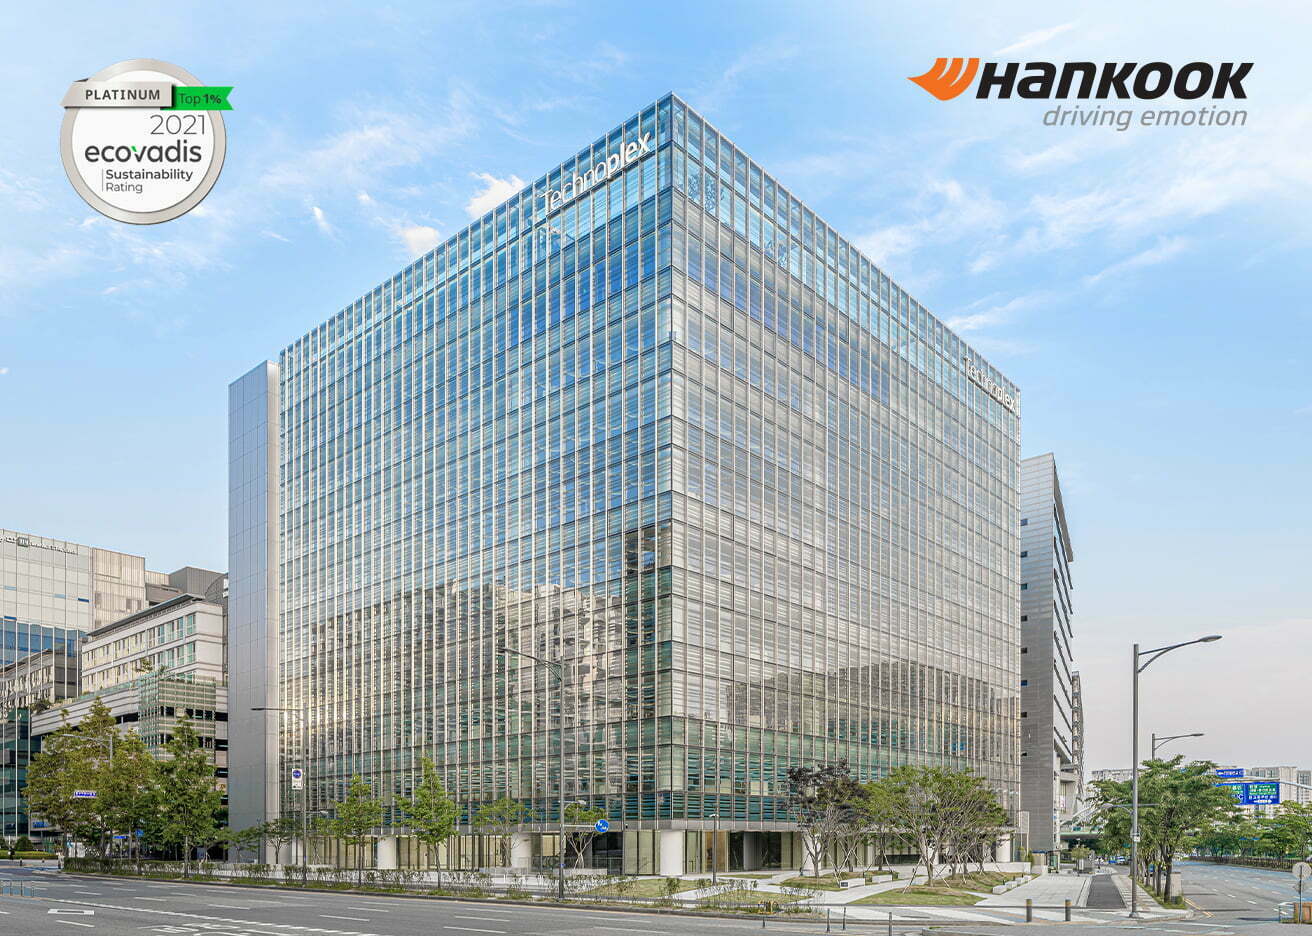 A Hankook továbbra is a természetes gumi fenntartható értékláncáért dolgozik